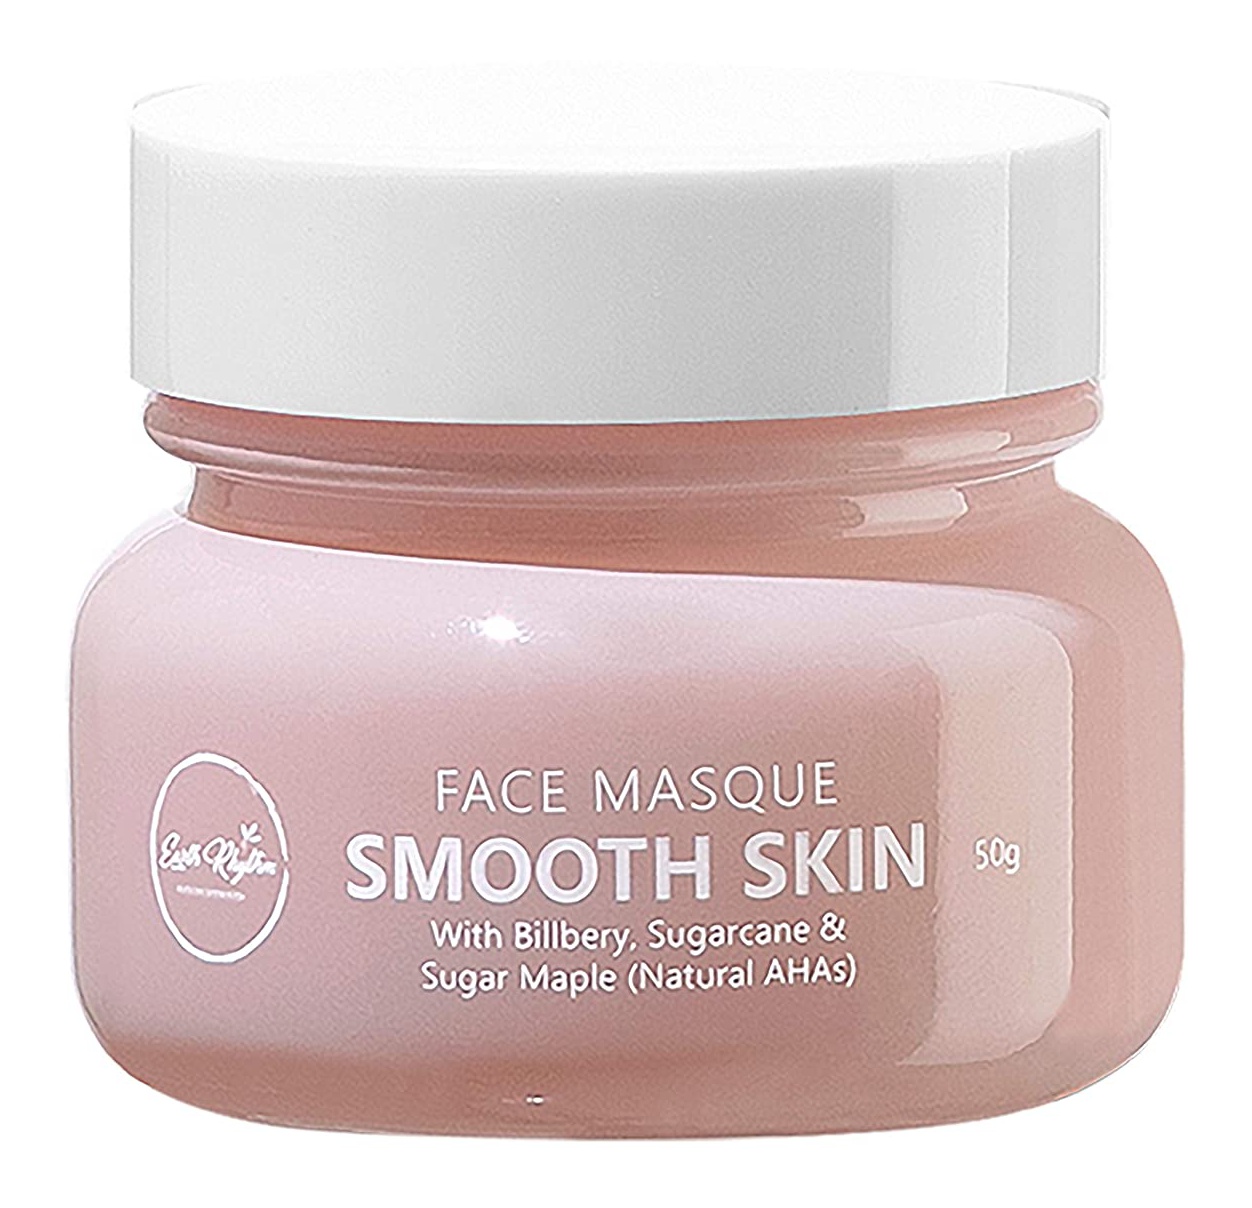 Earth Rhythm Face Masque Smooth Skin